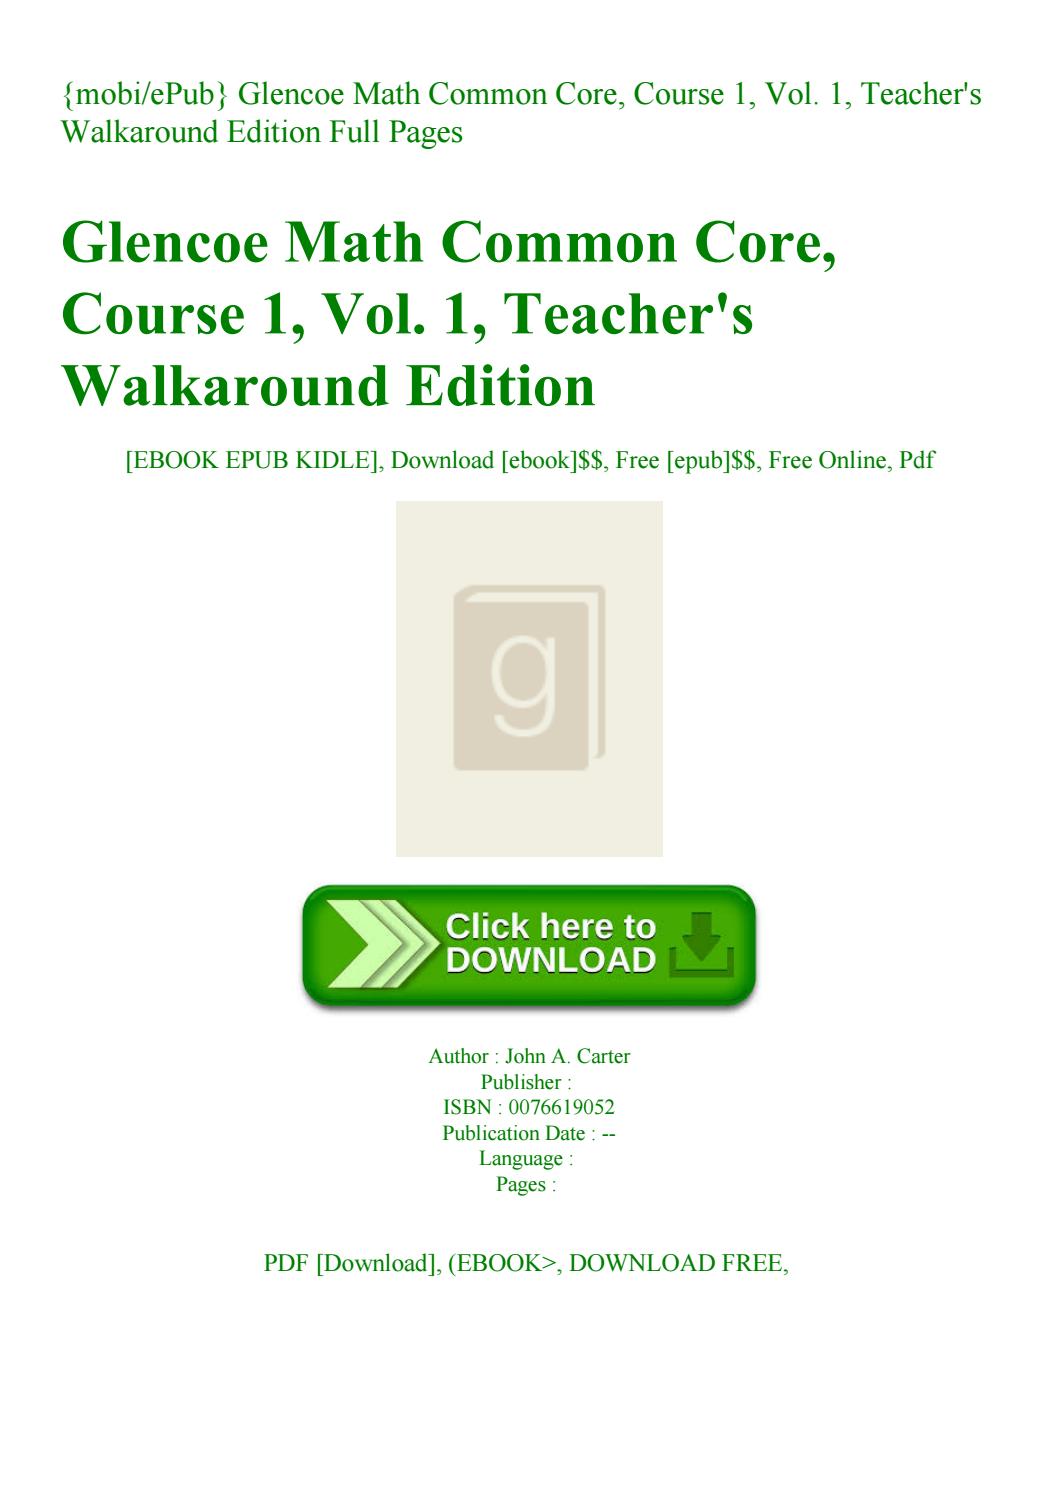 Glencoe math course 1 volume 2 6th grade pdf